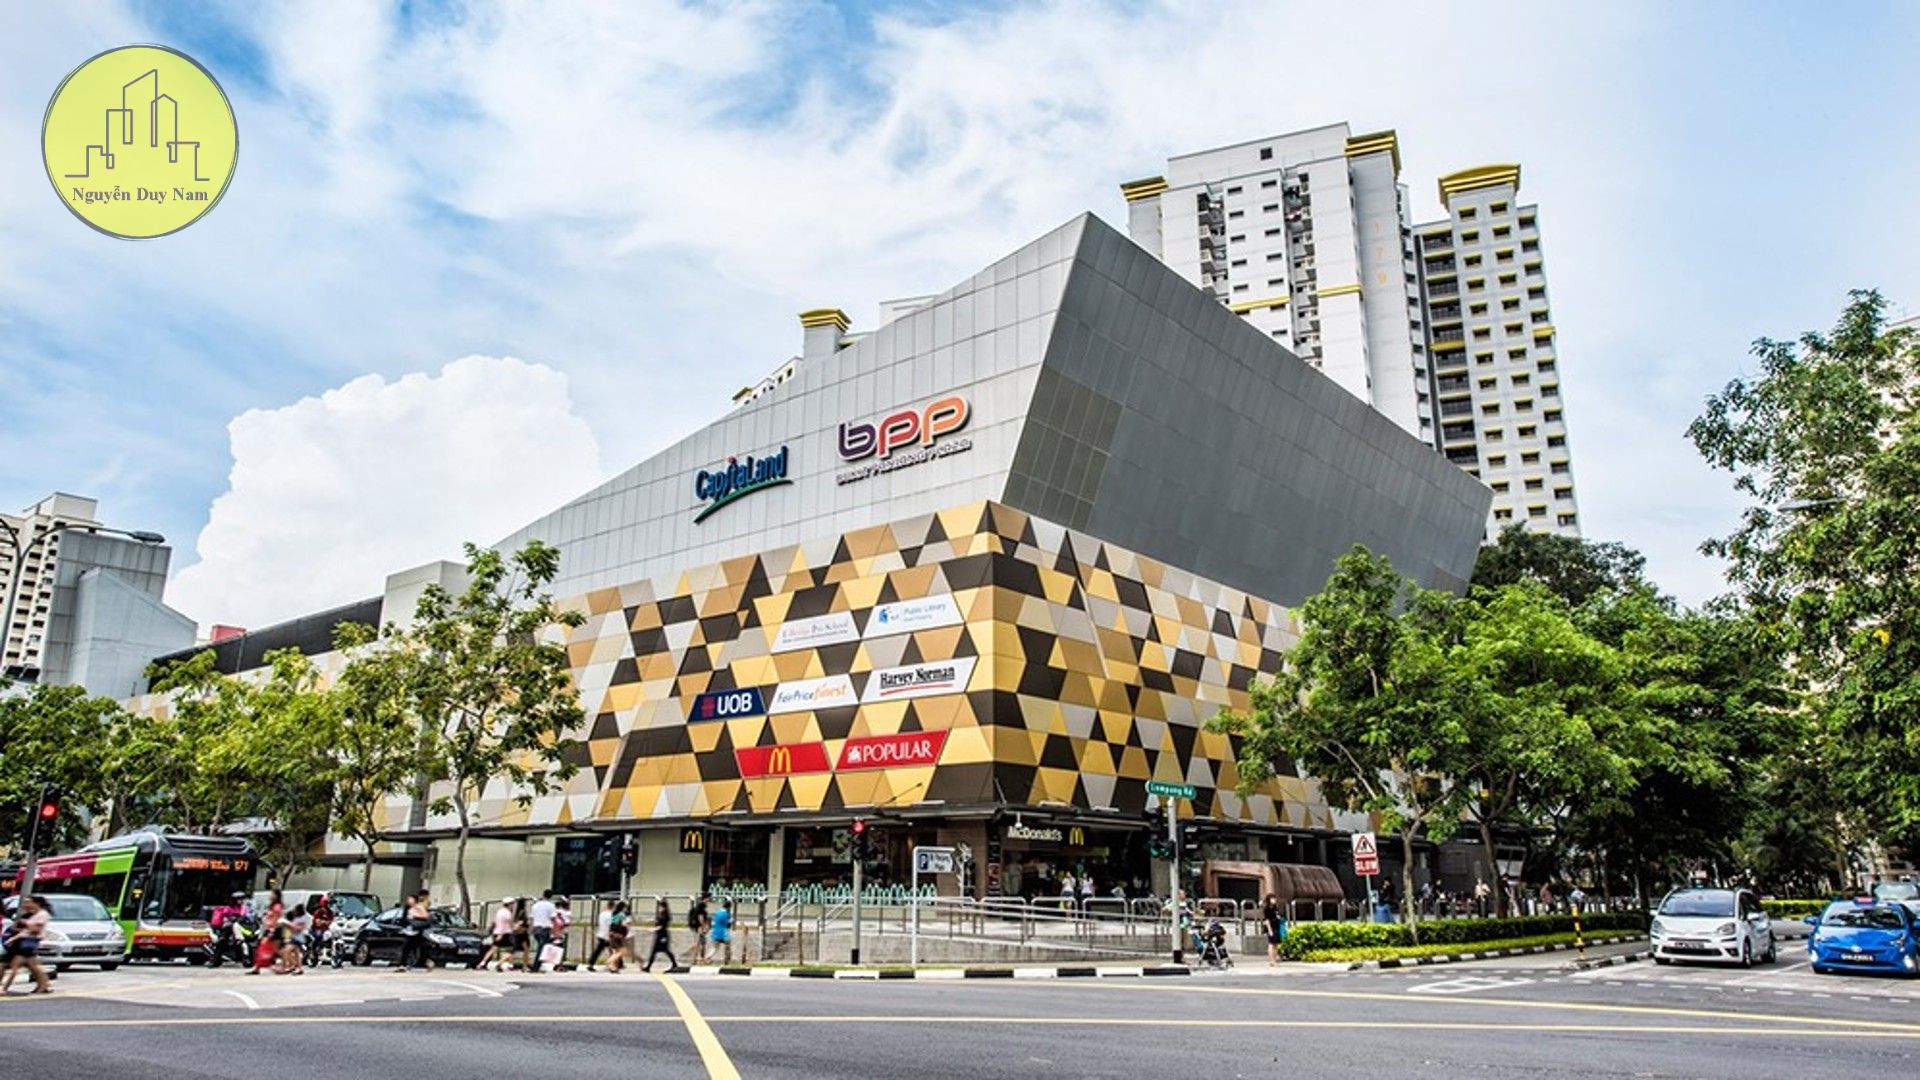 Trung tâm thương mại CapitaLand Singapore Malls - Bukit Panjang Plaza